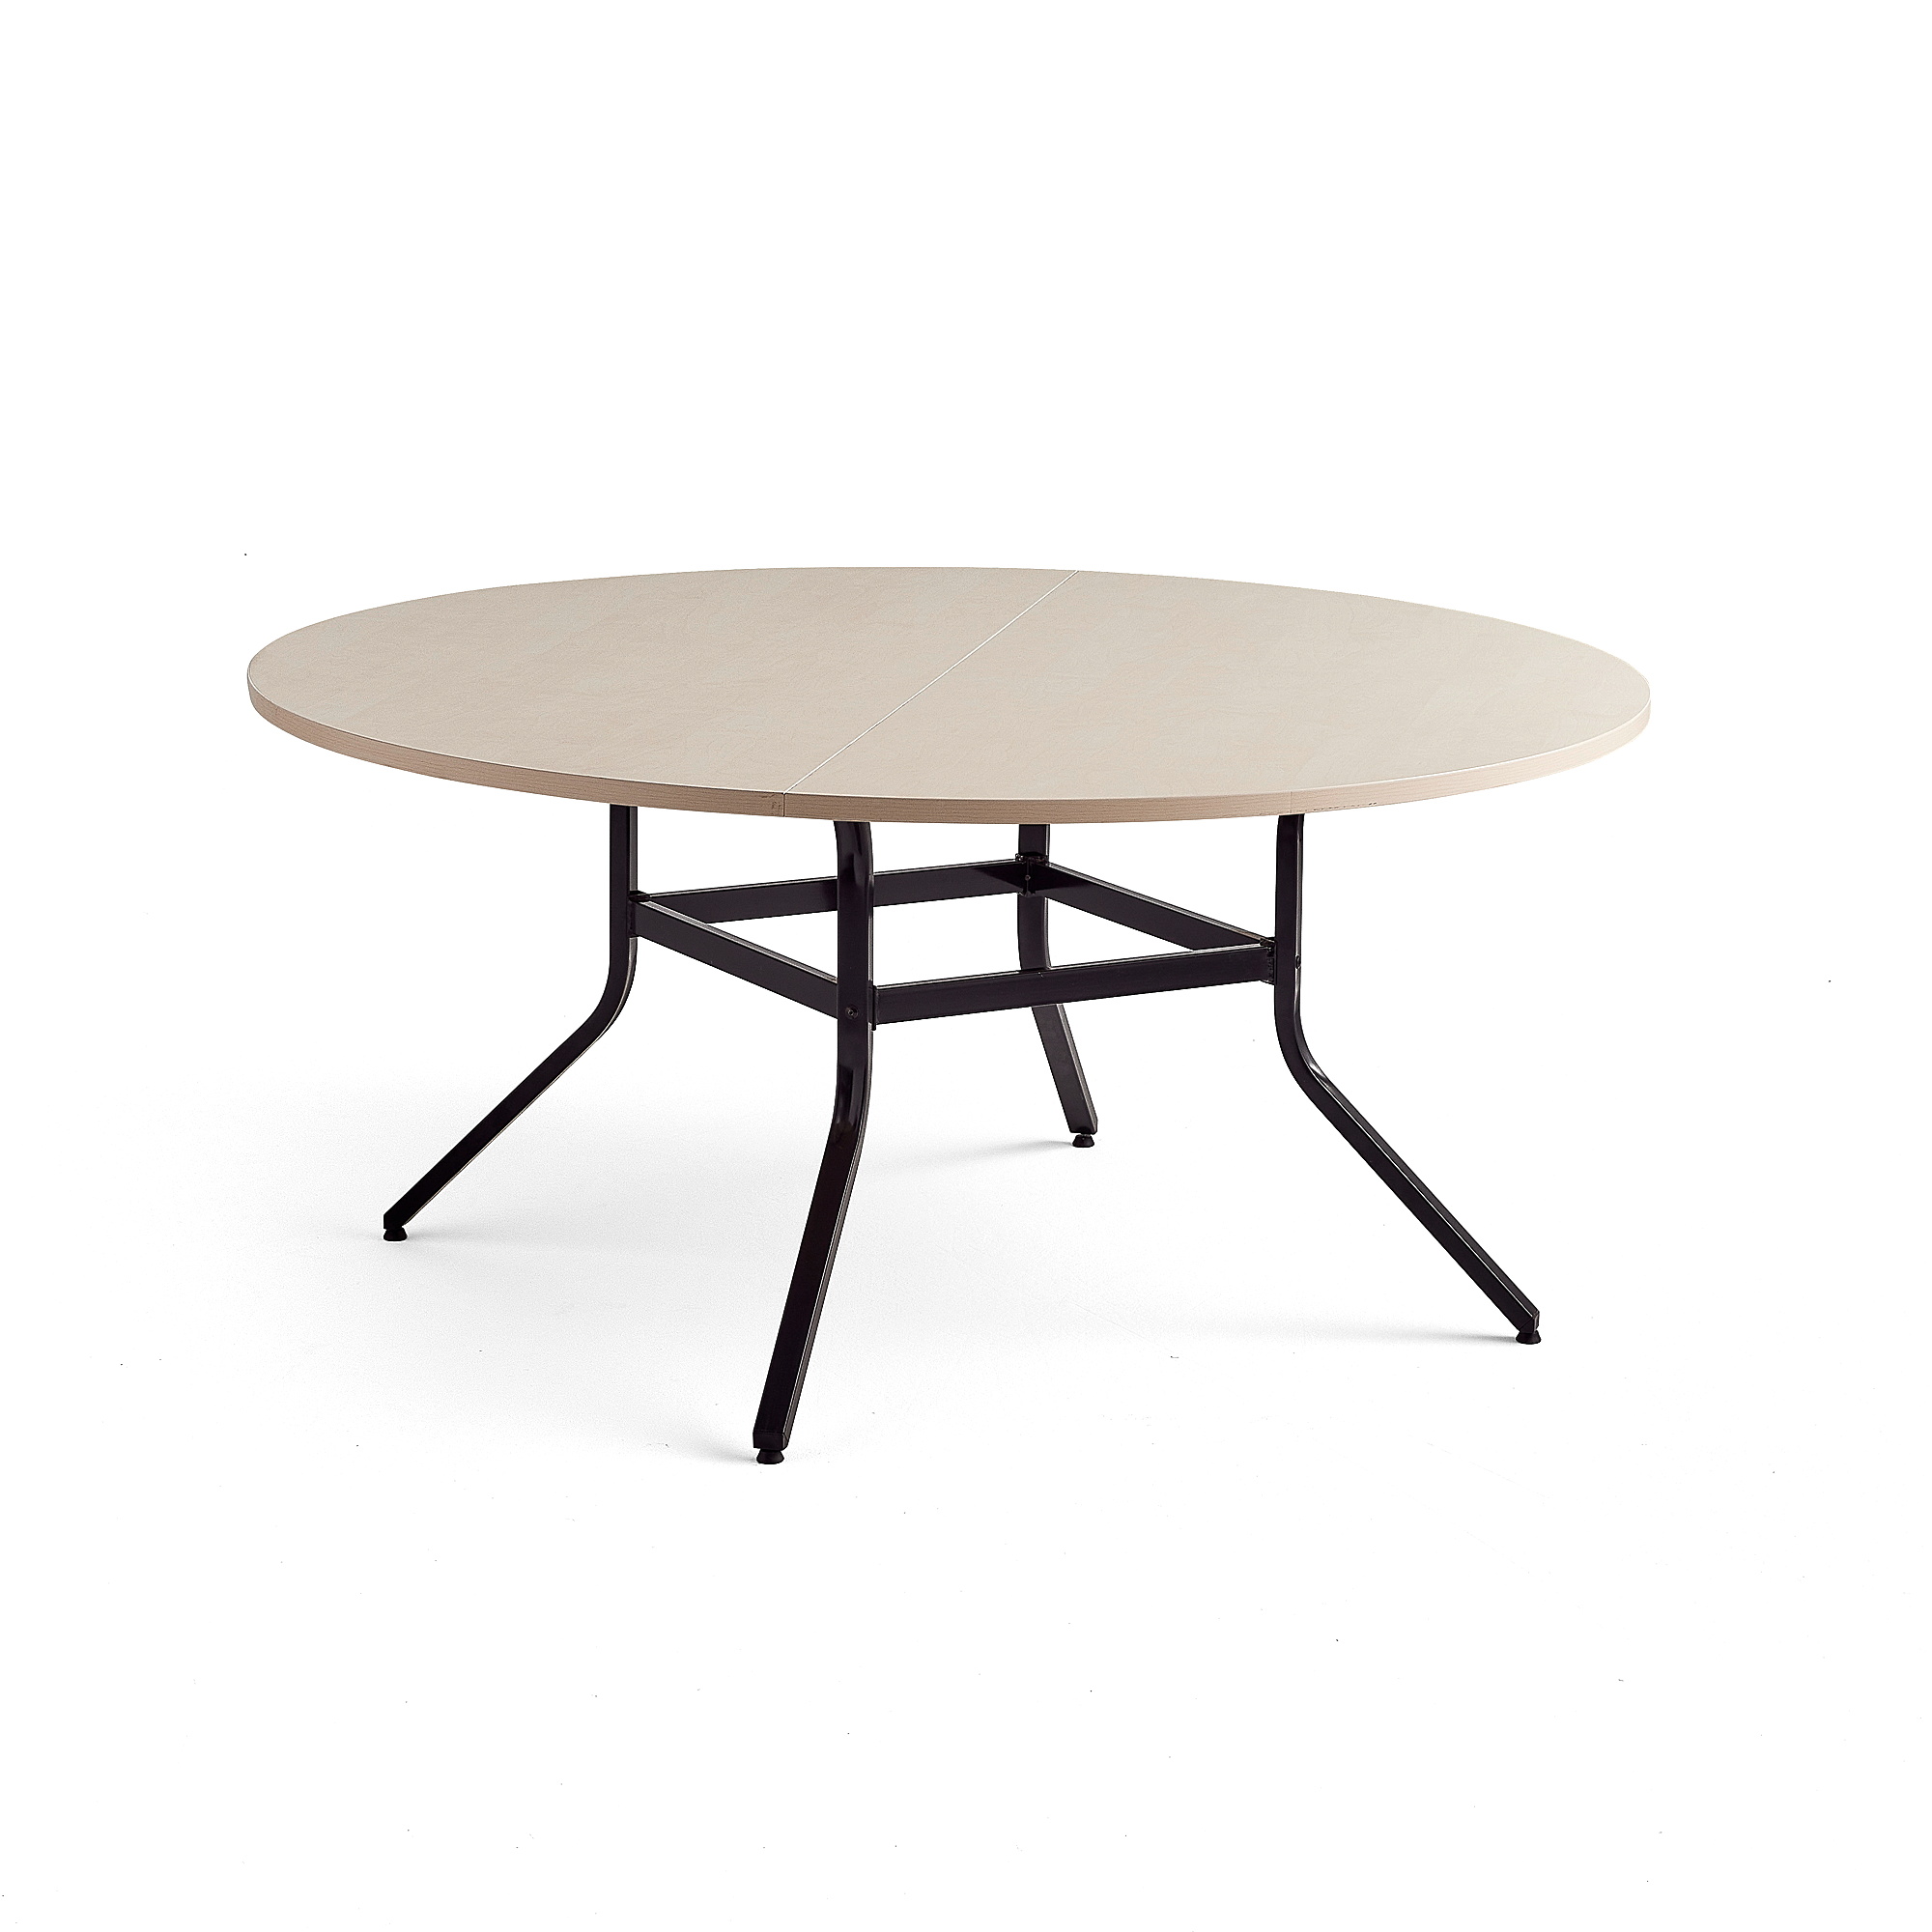 Stůl VARIOUS, Ø1600 mm, výška 740 mm, černá, bříza